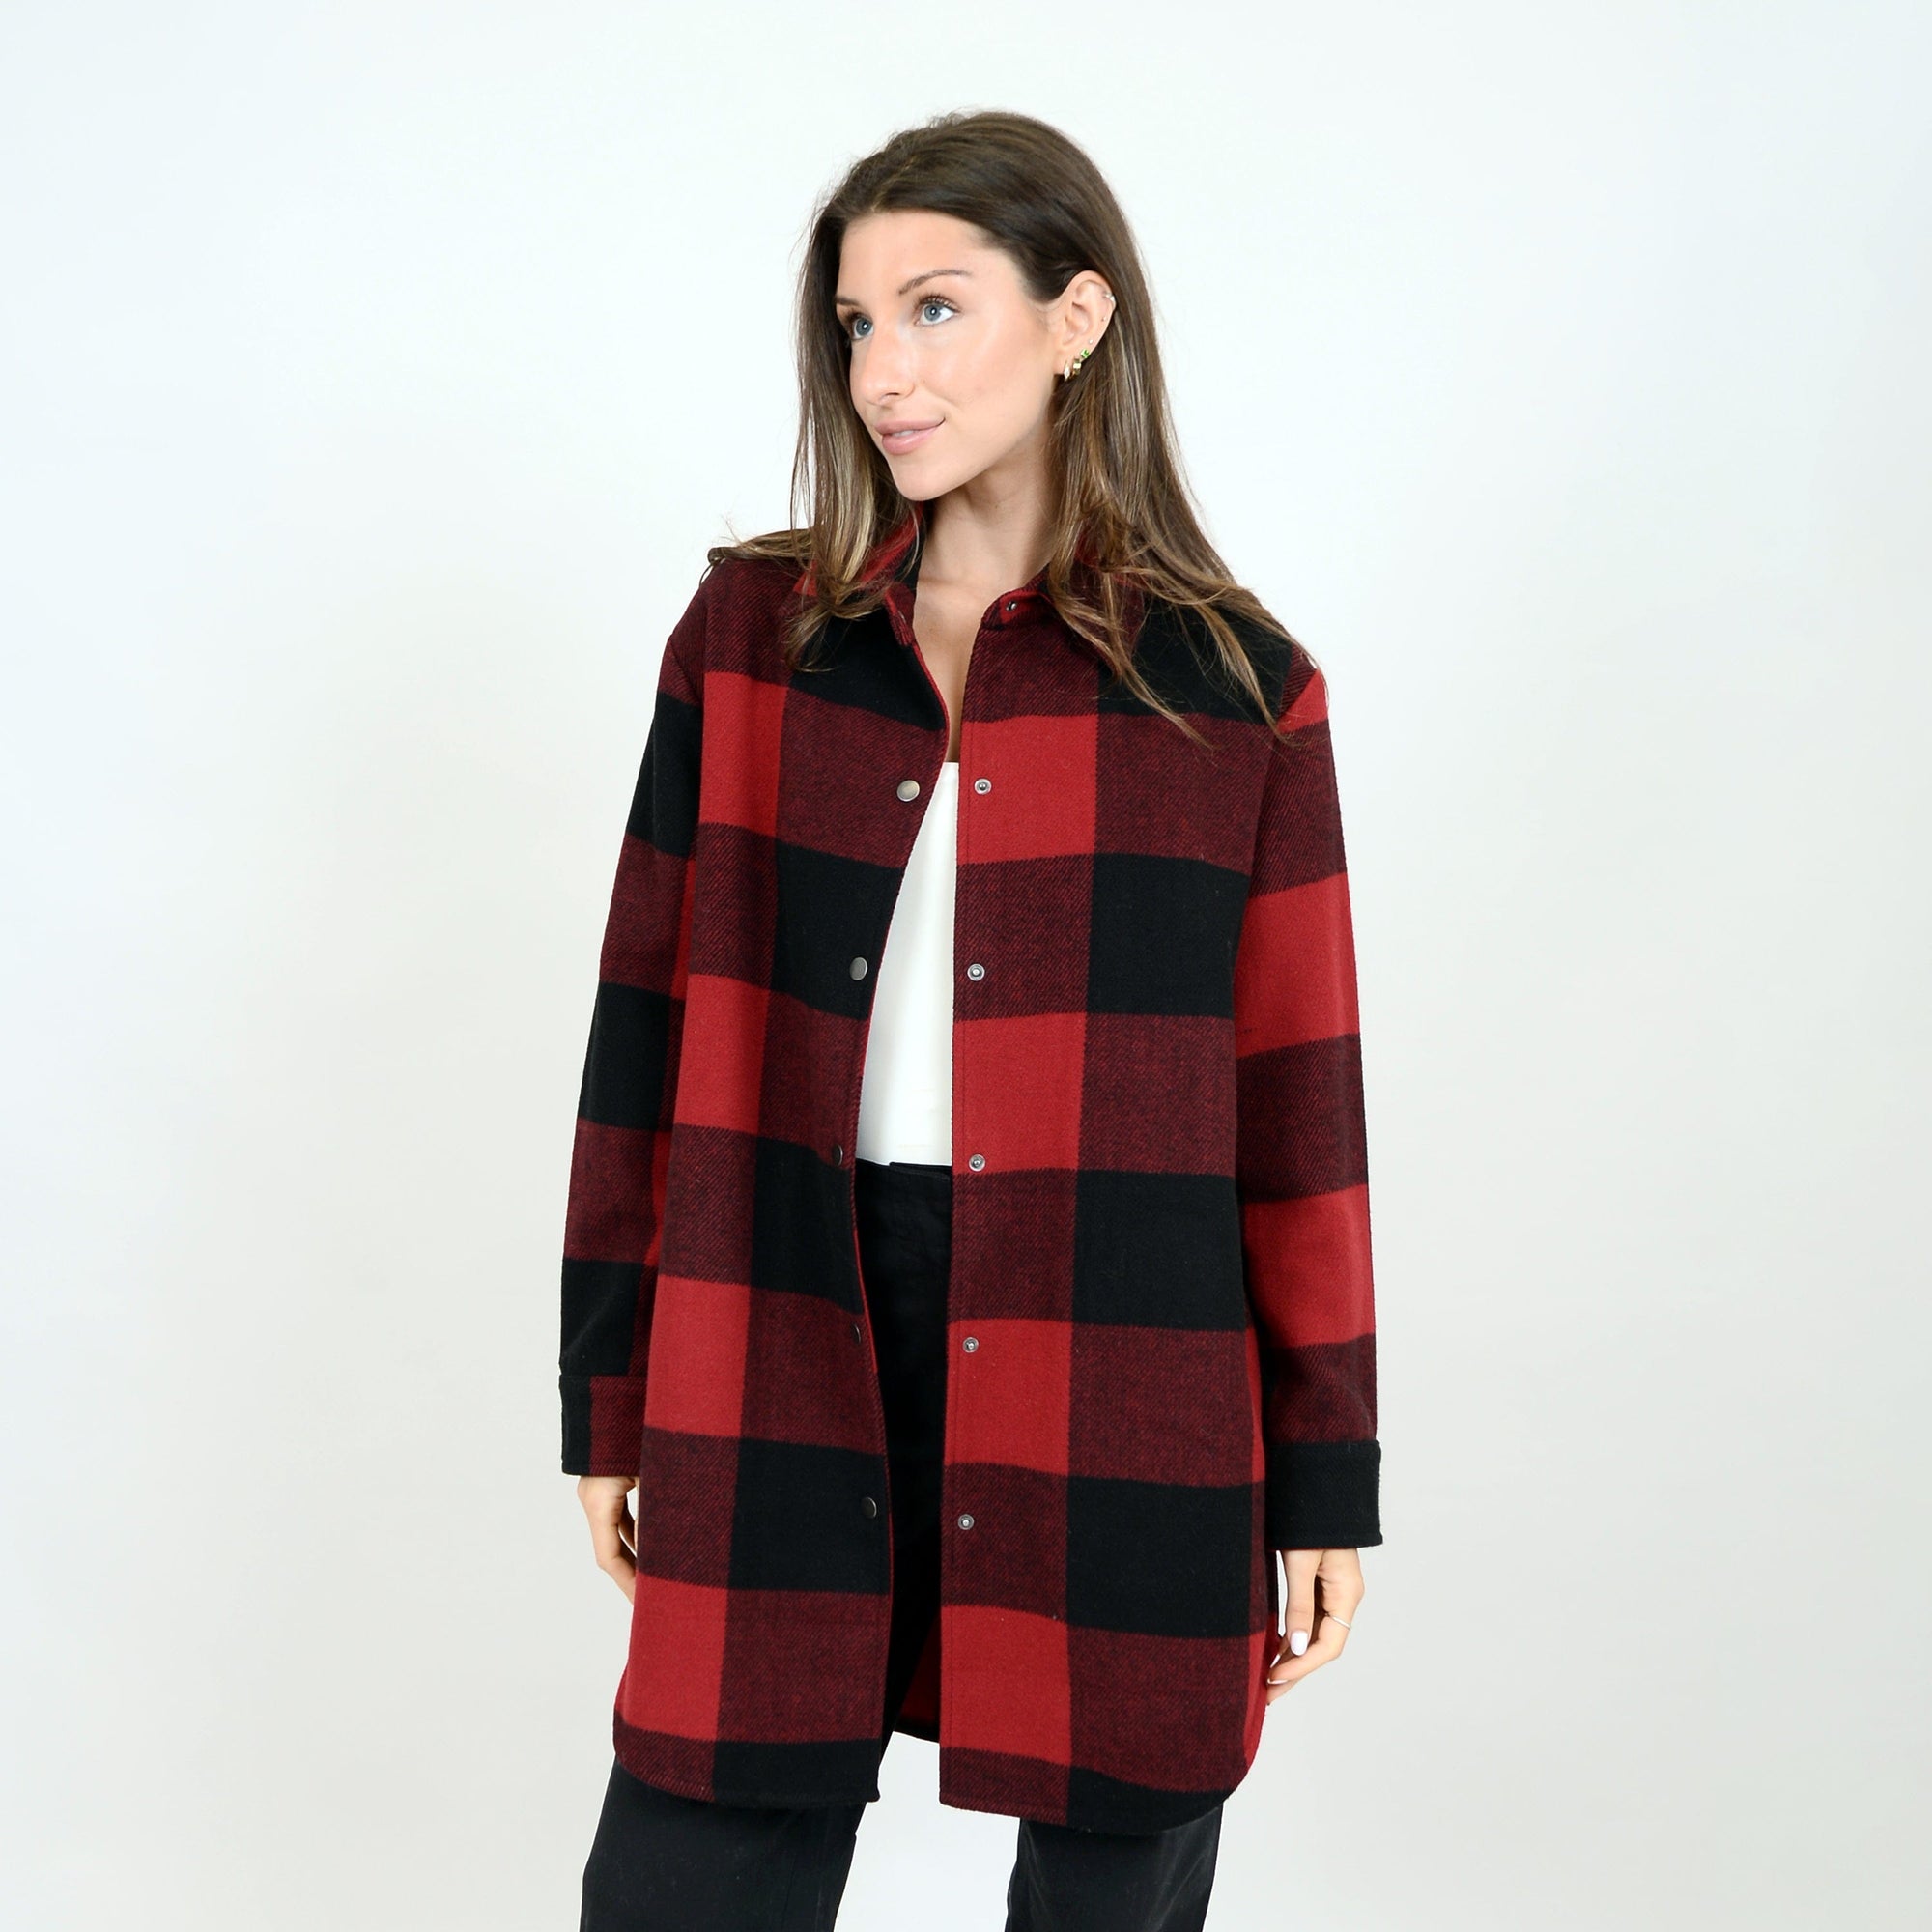 Canadiana Plaid Jacket - Underground Clothing